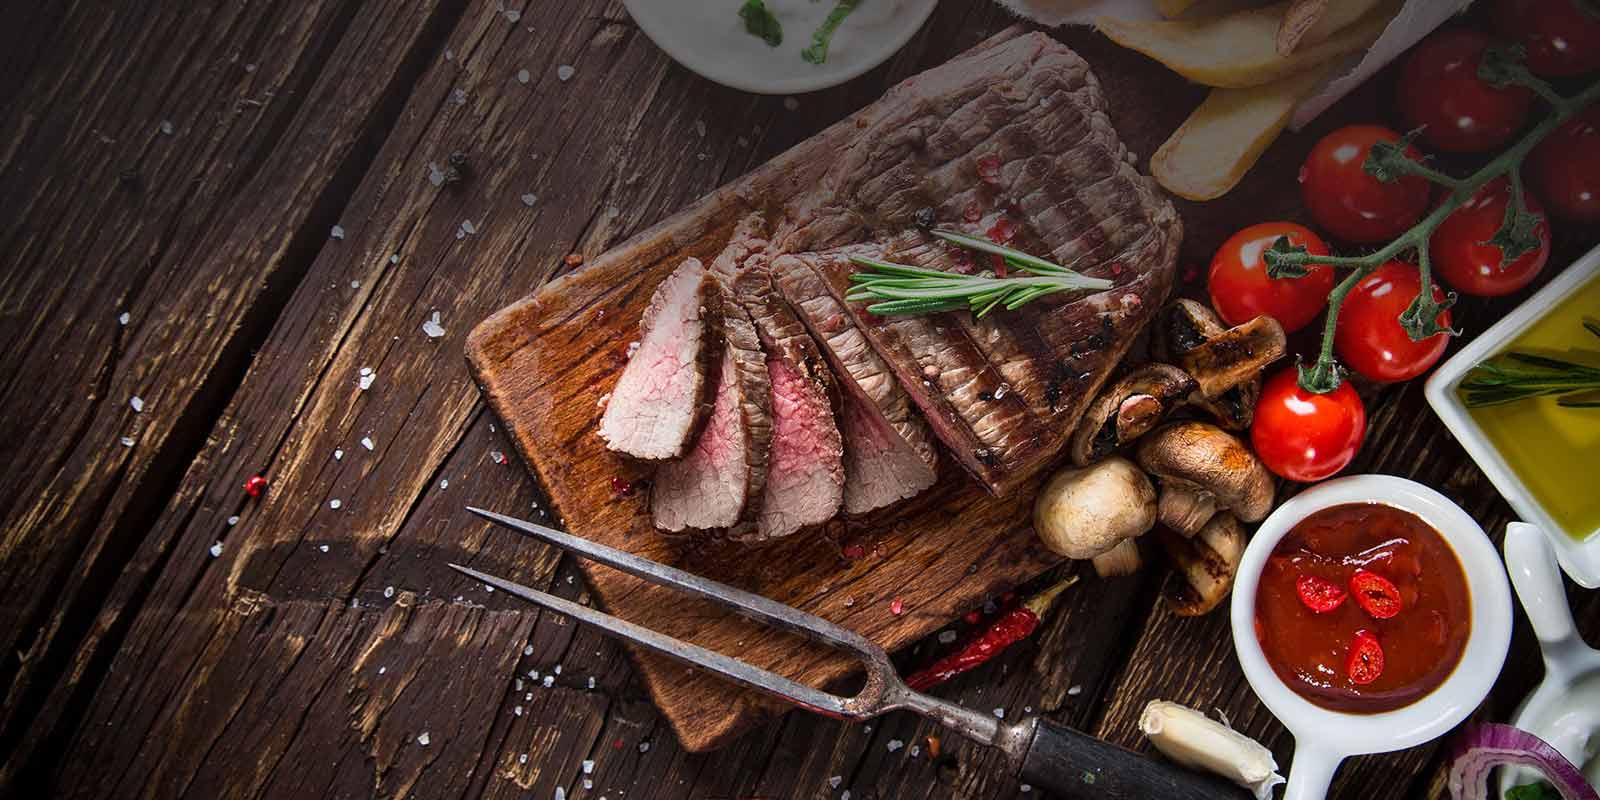 Greenlea-vlees uit Nieuw-Zeeland Greenlea is trots op het produceren van het beste rundvlees dat 100% met gras gevoerd is.